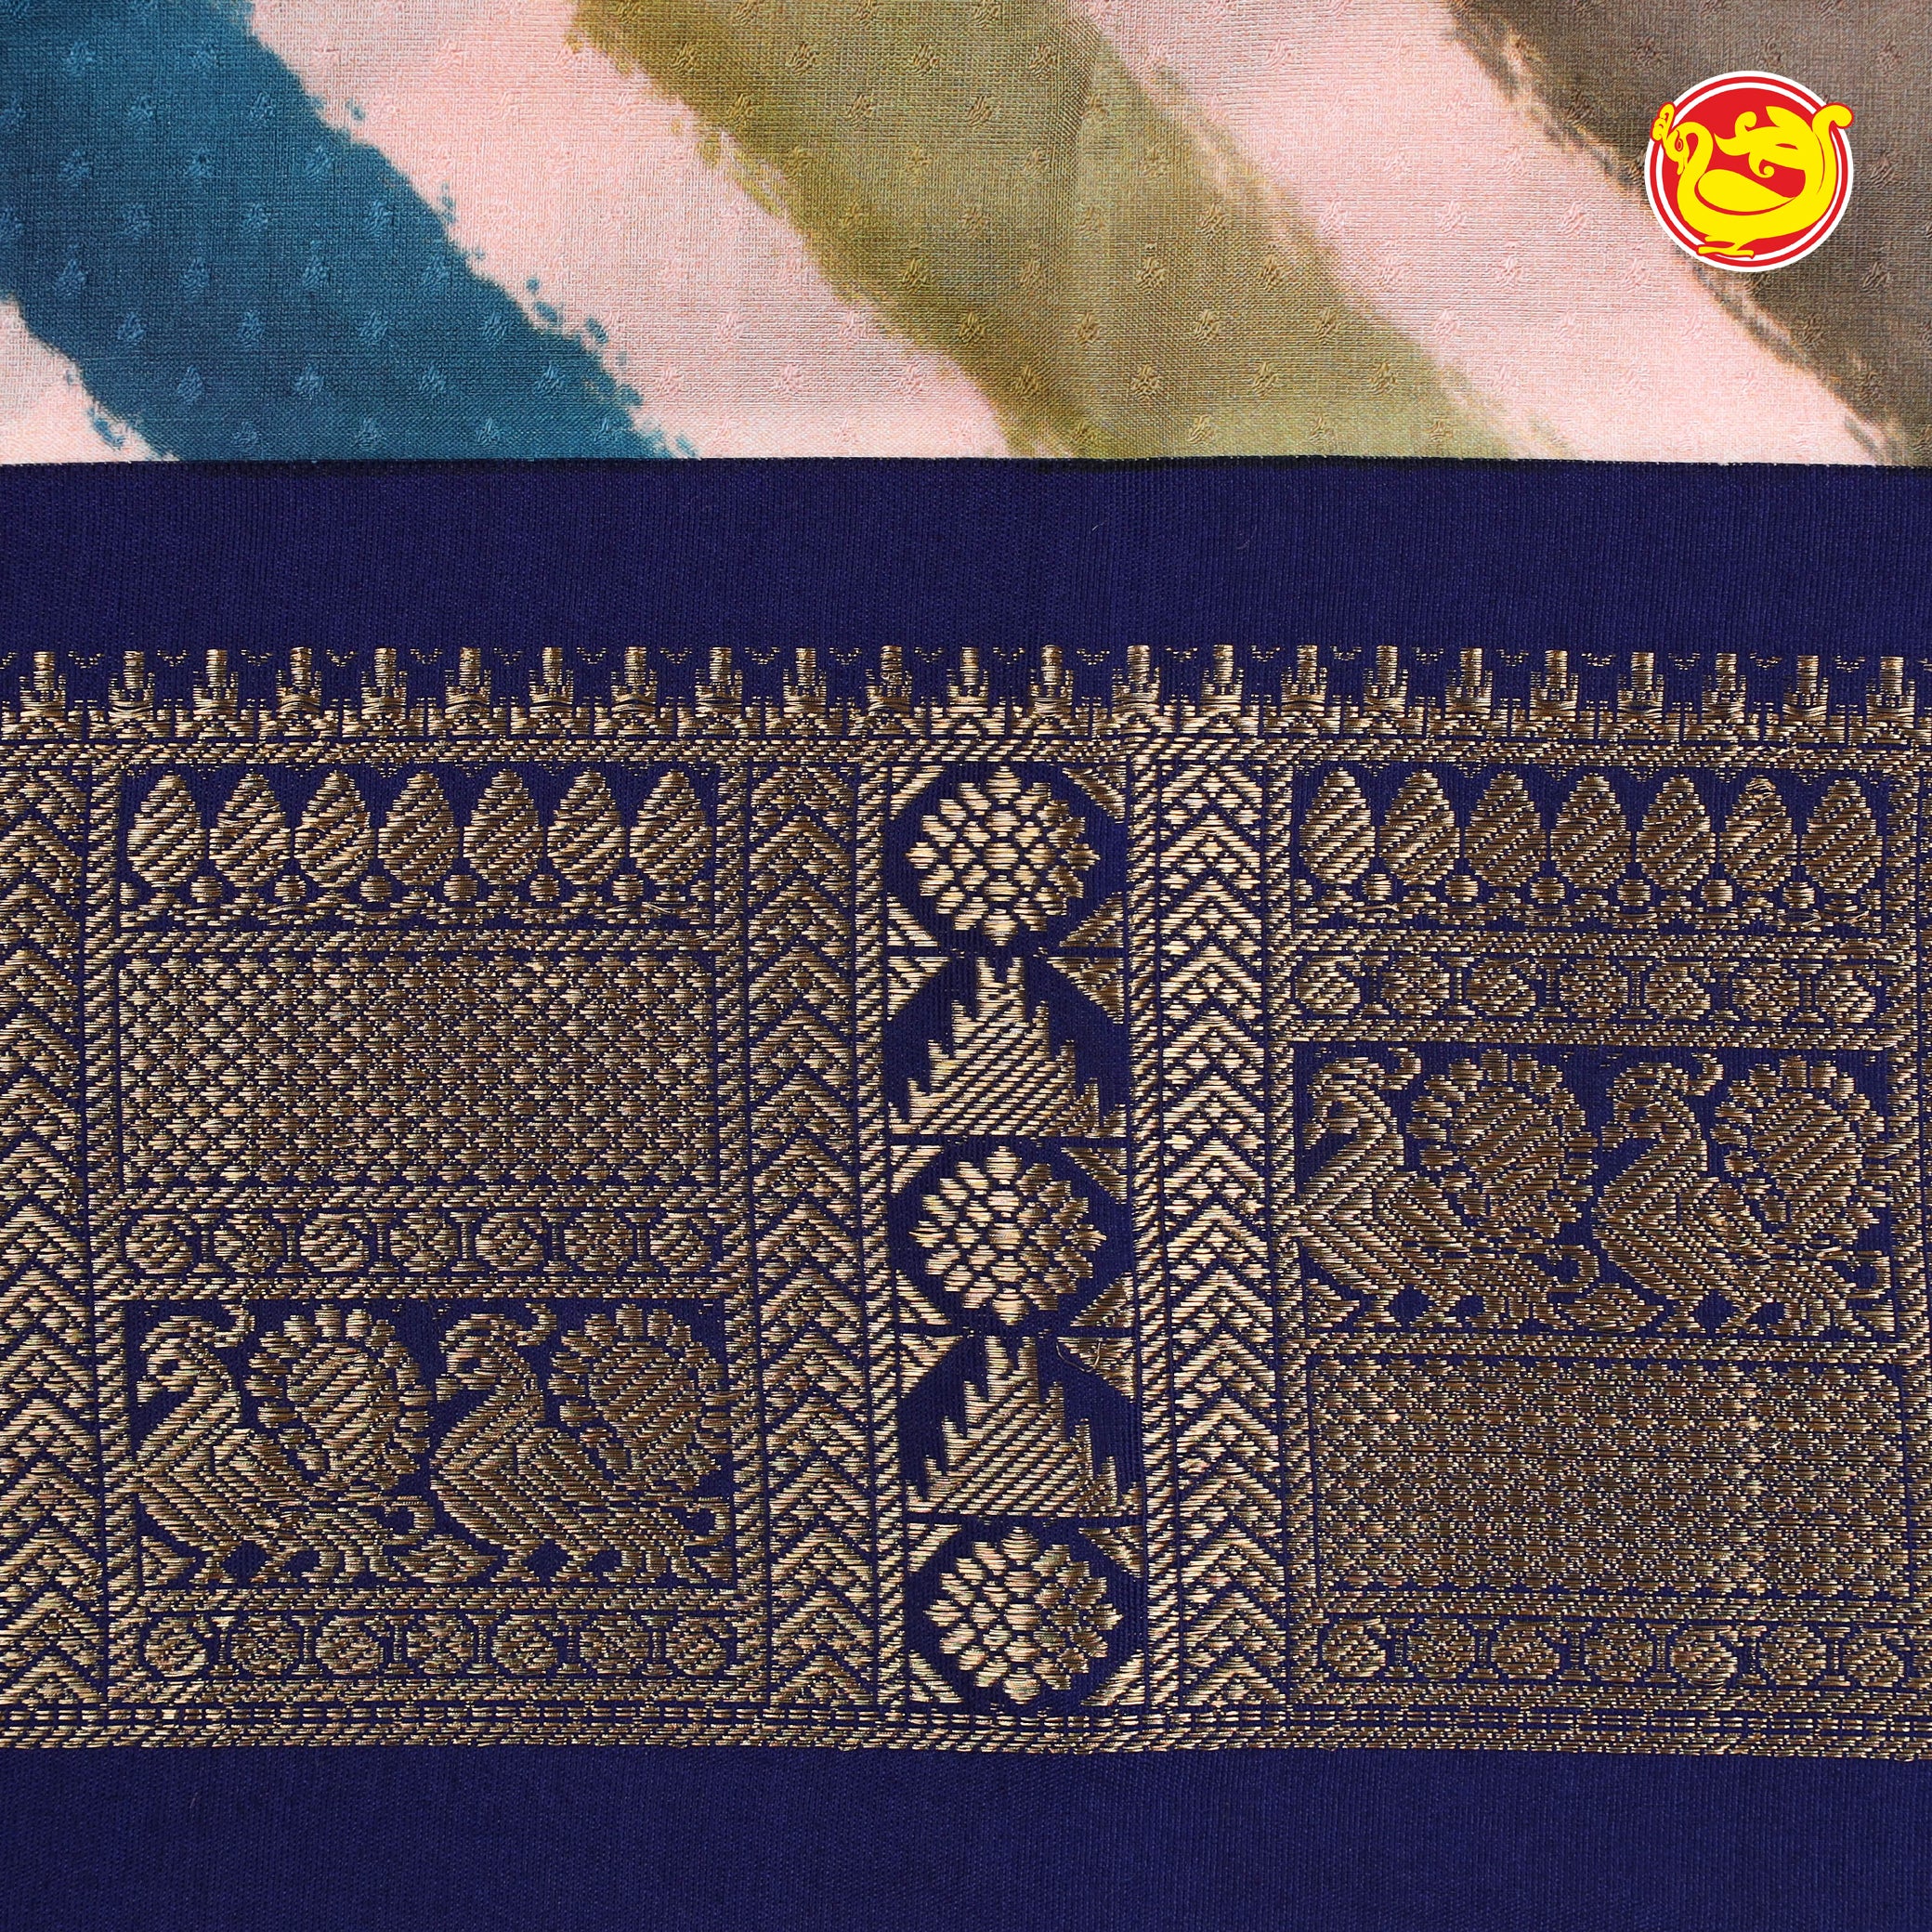 Navy blue pure kanchipuram silk saree with leheriya stripes